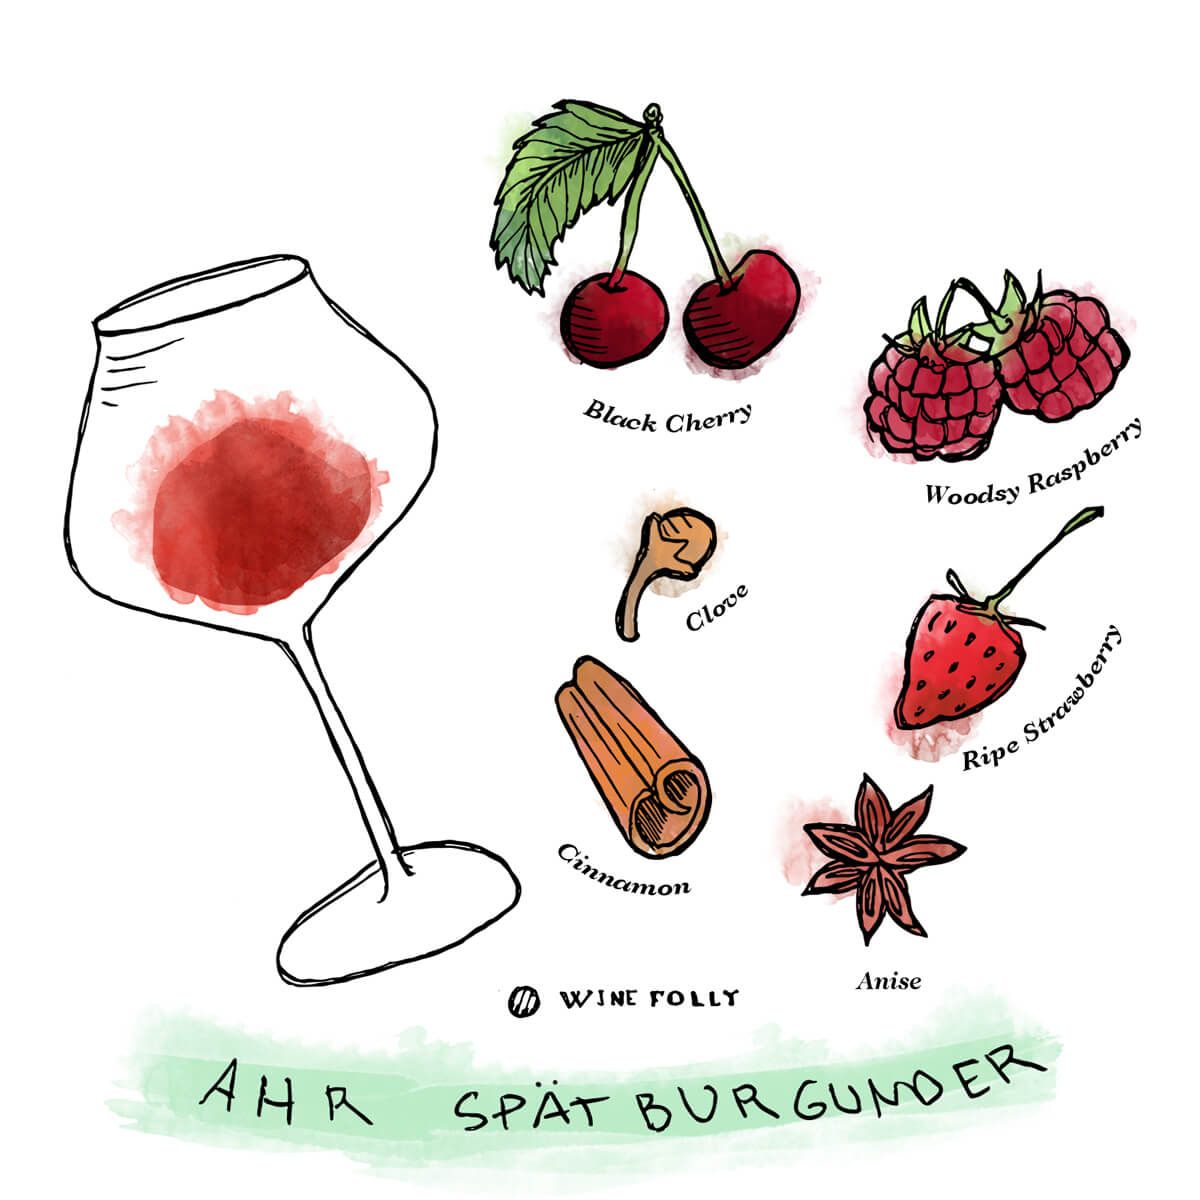 Ahr-Pinot-Noir-Spatburg under-Tasting-Notes-WineFolly-Illustration